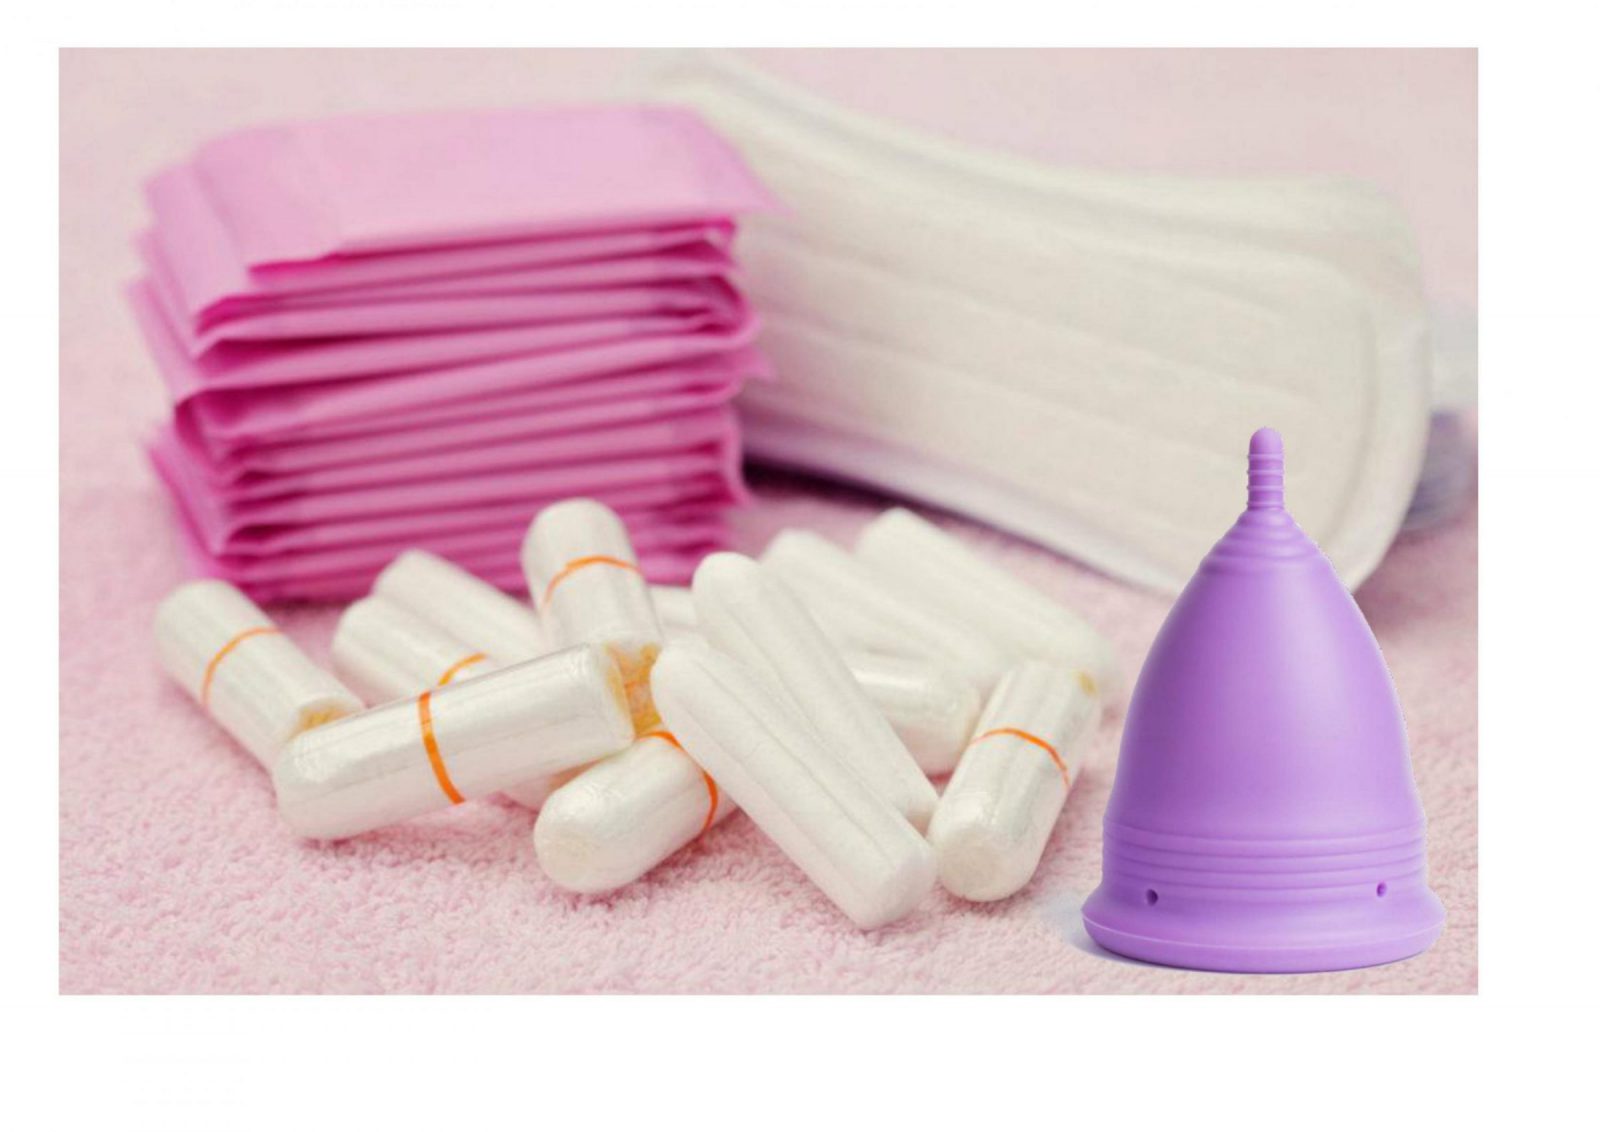 comparativa tampon y copa menstrual